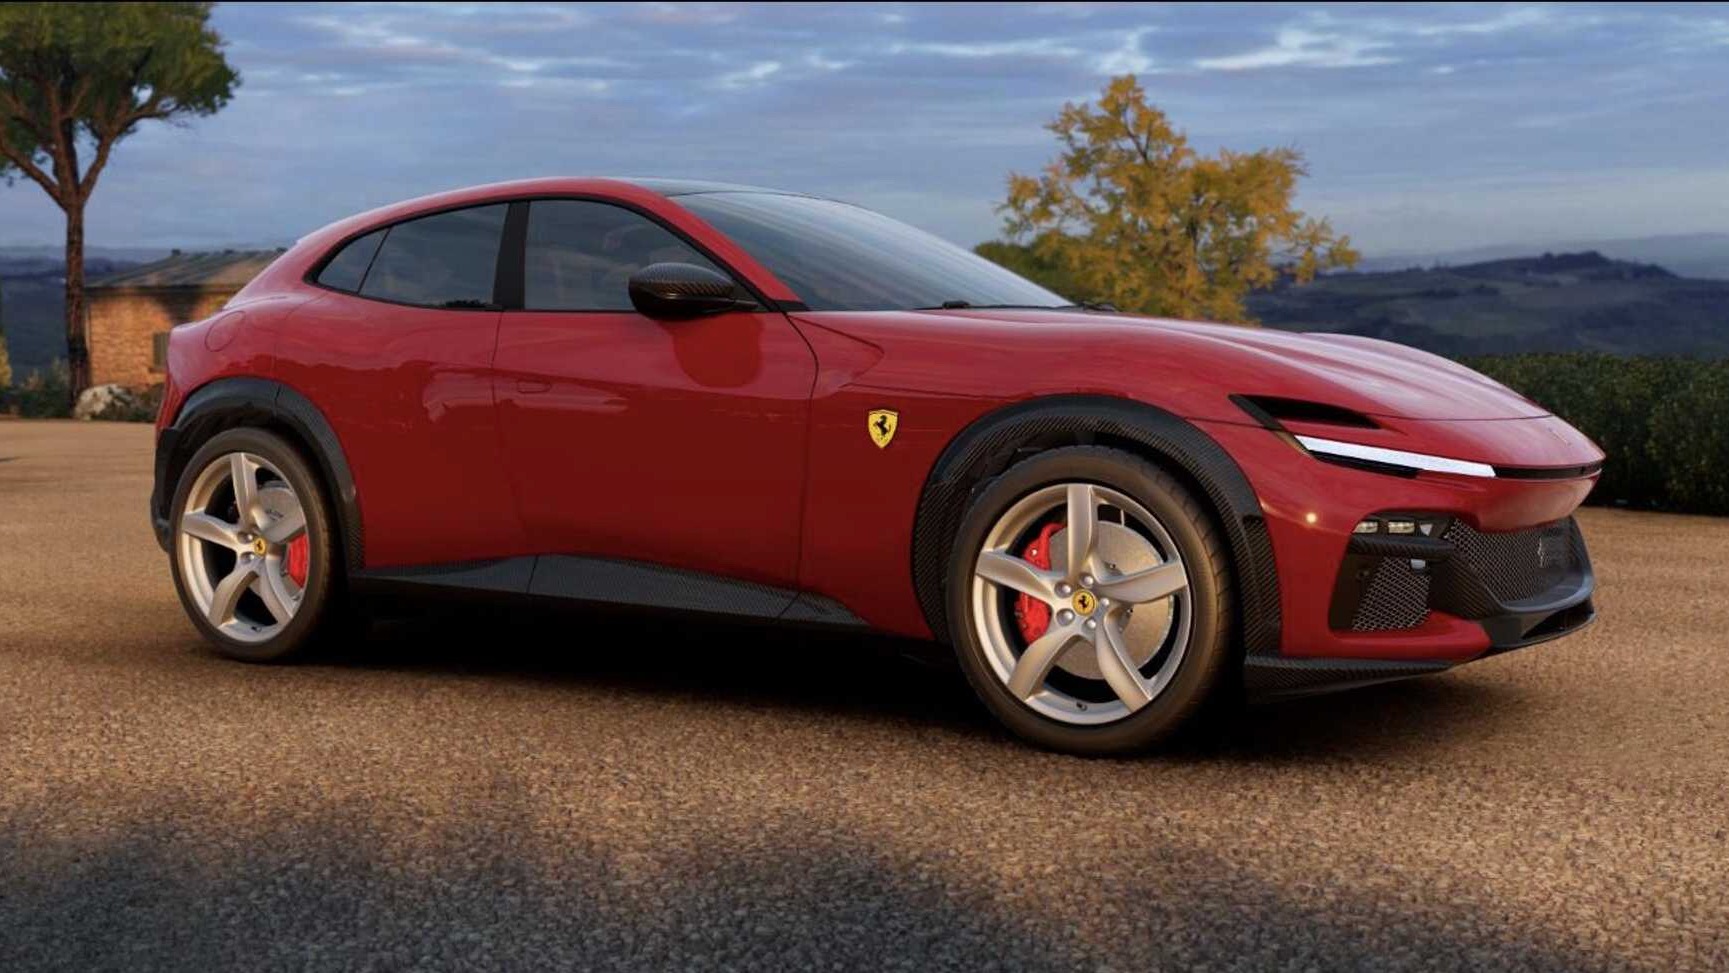 Ferrari Purosangue: Ferrari's first SUV - Healthy Living + Travel